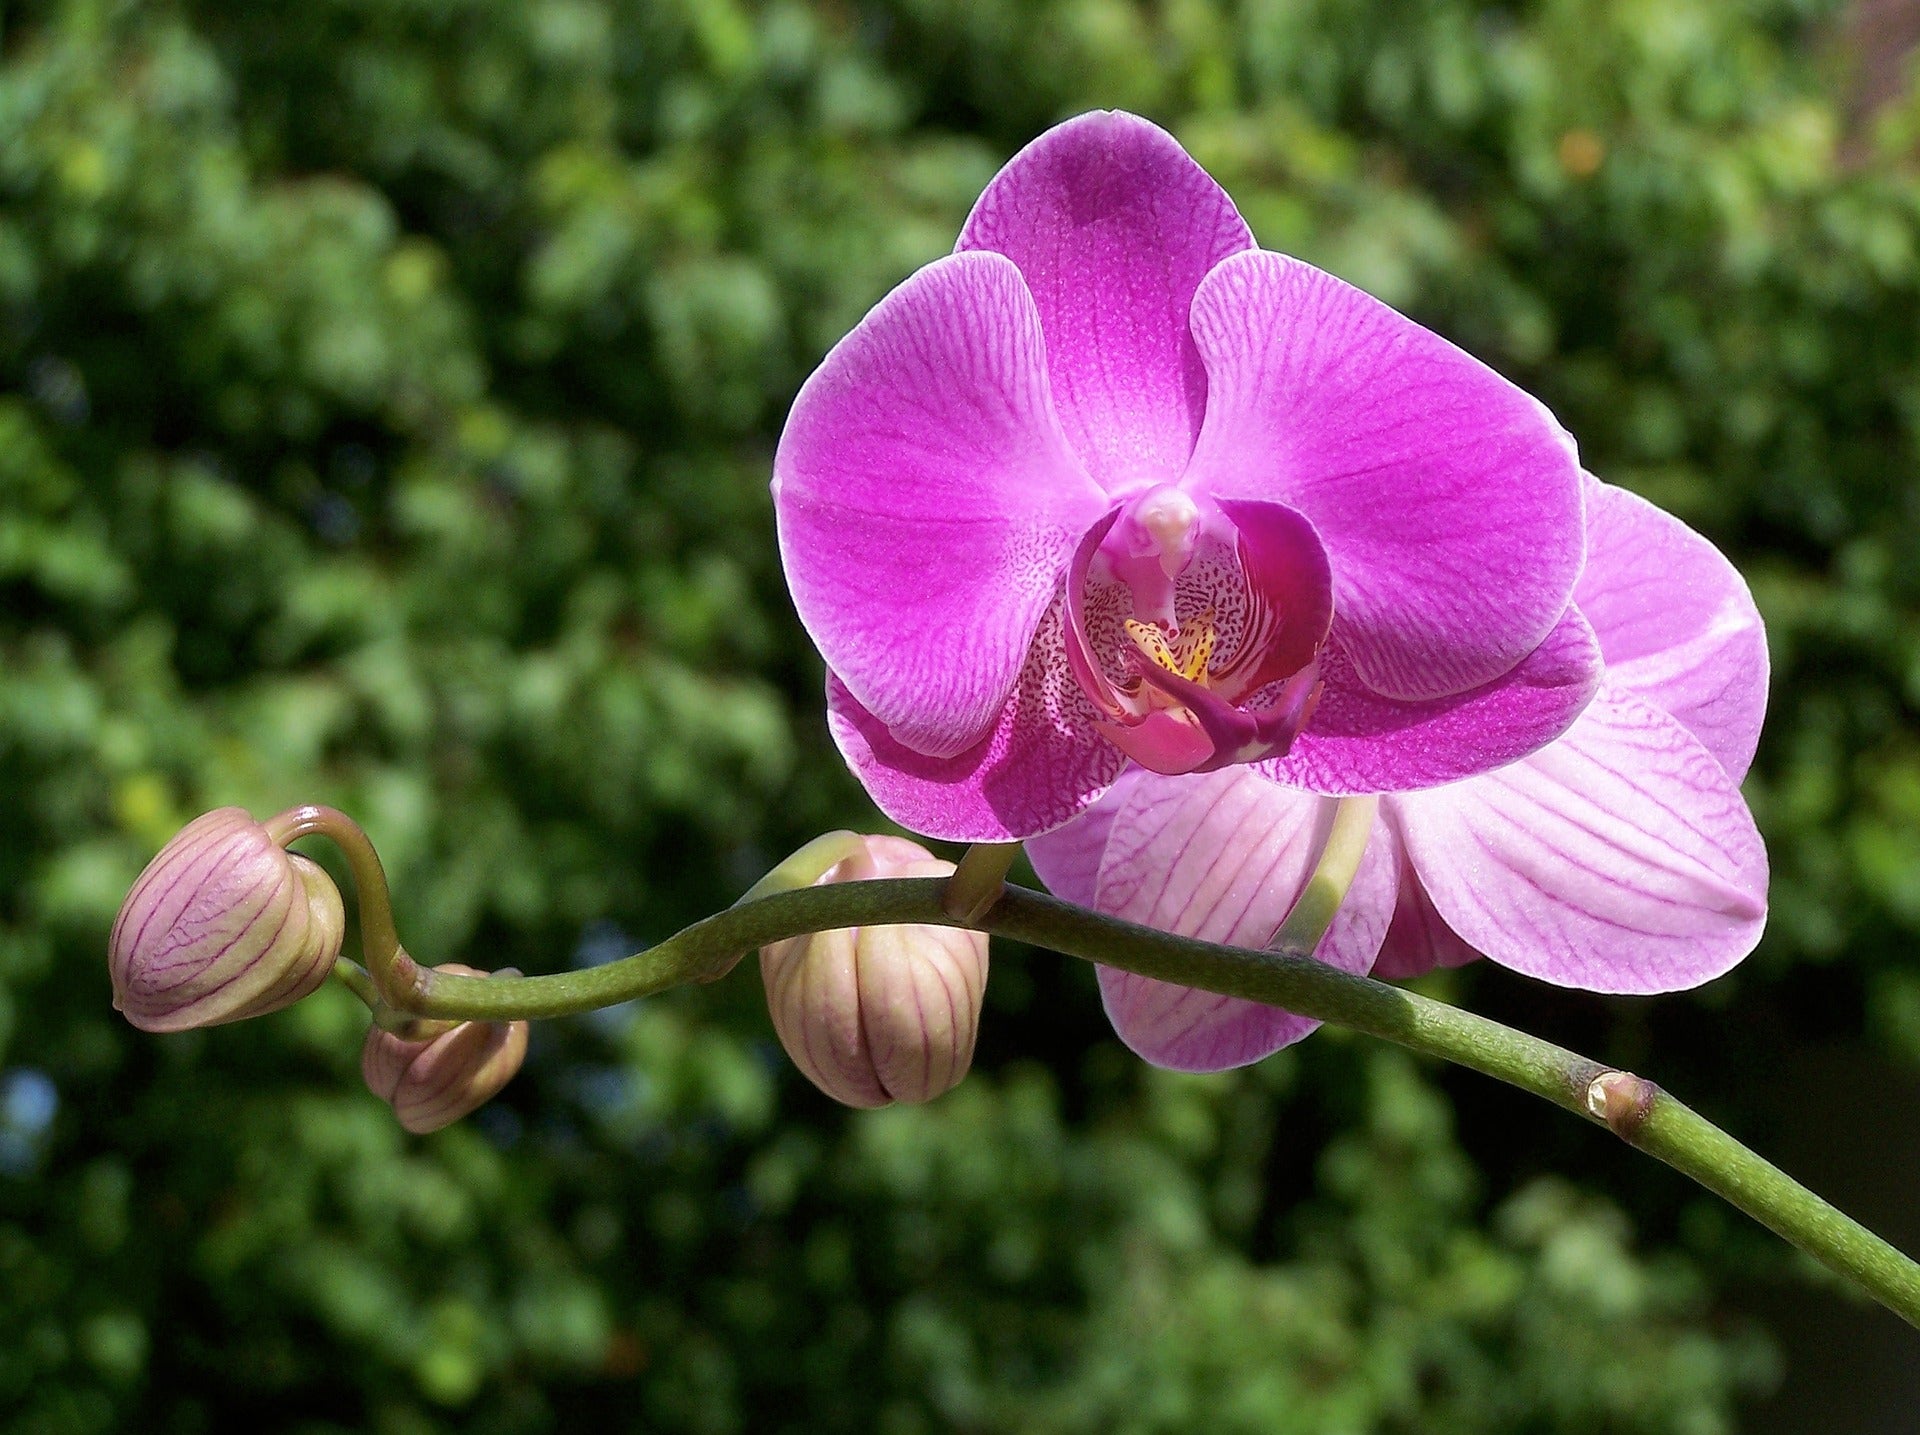 Jasmins Honey Orchid